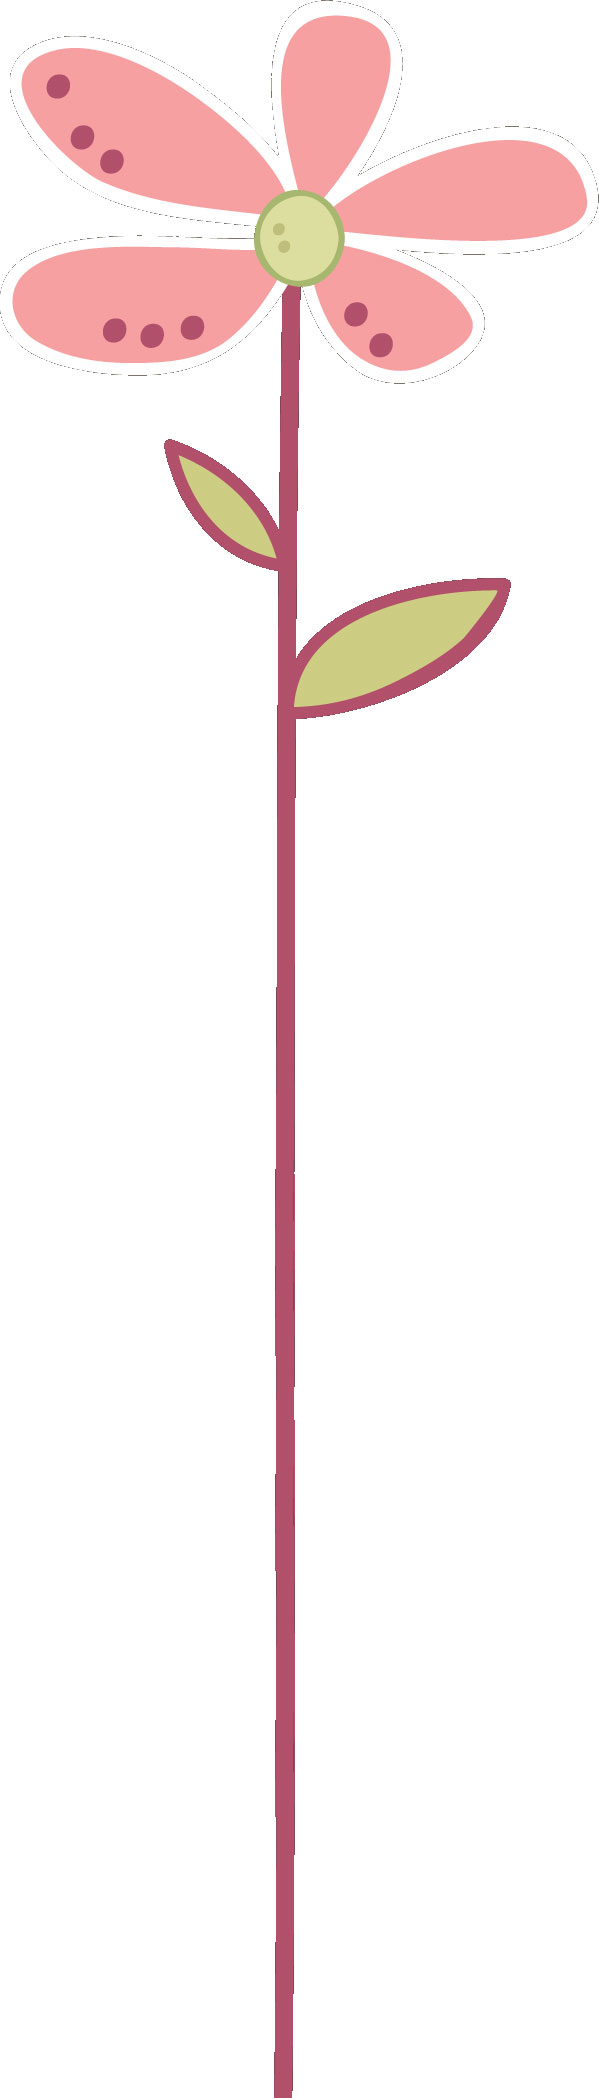 寄せ書きイラスト素材「ピンクの長い花」